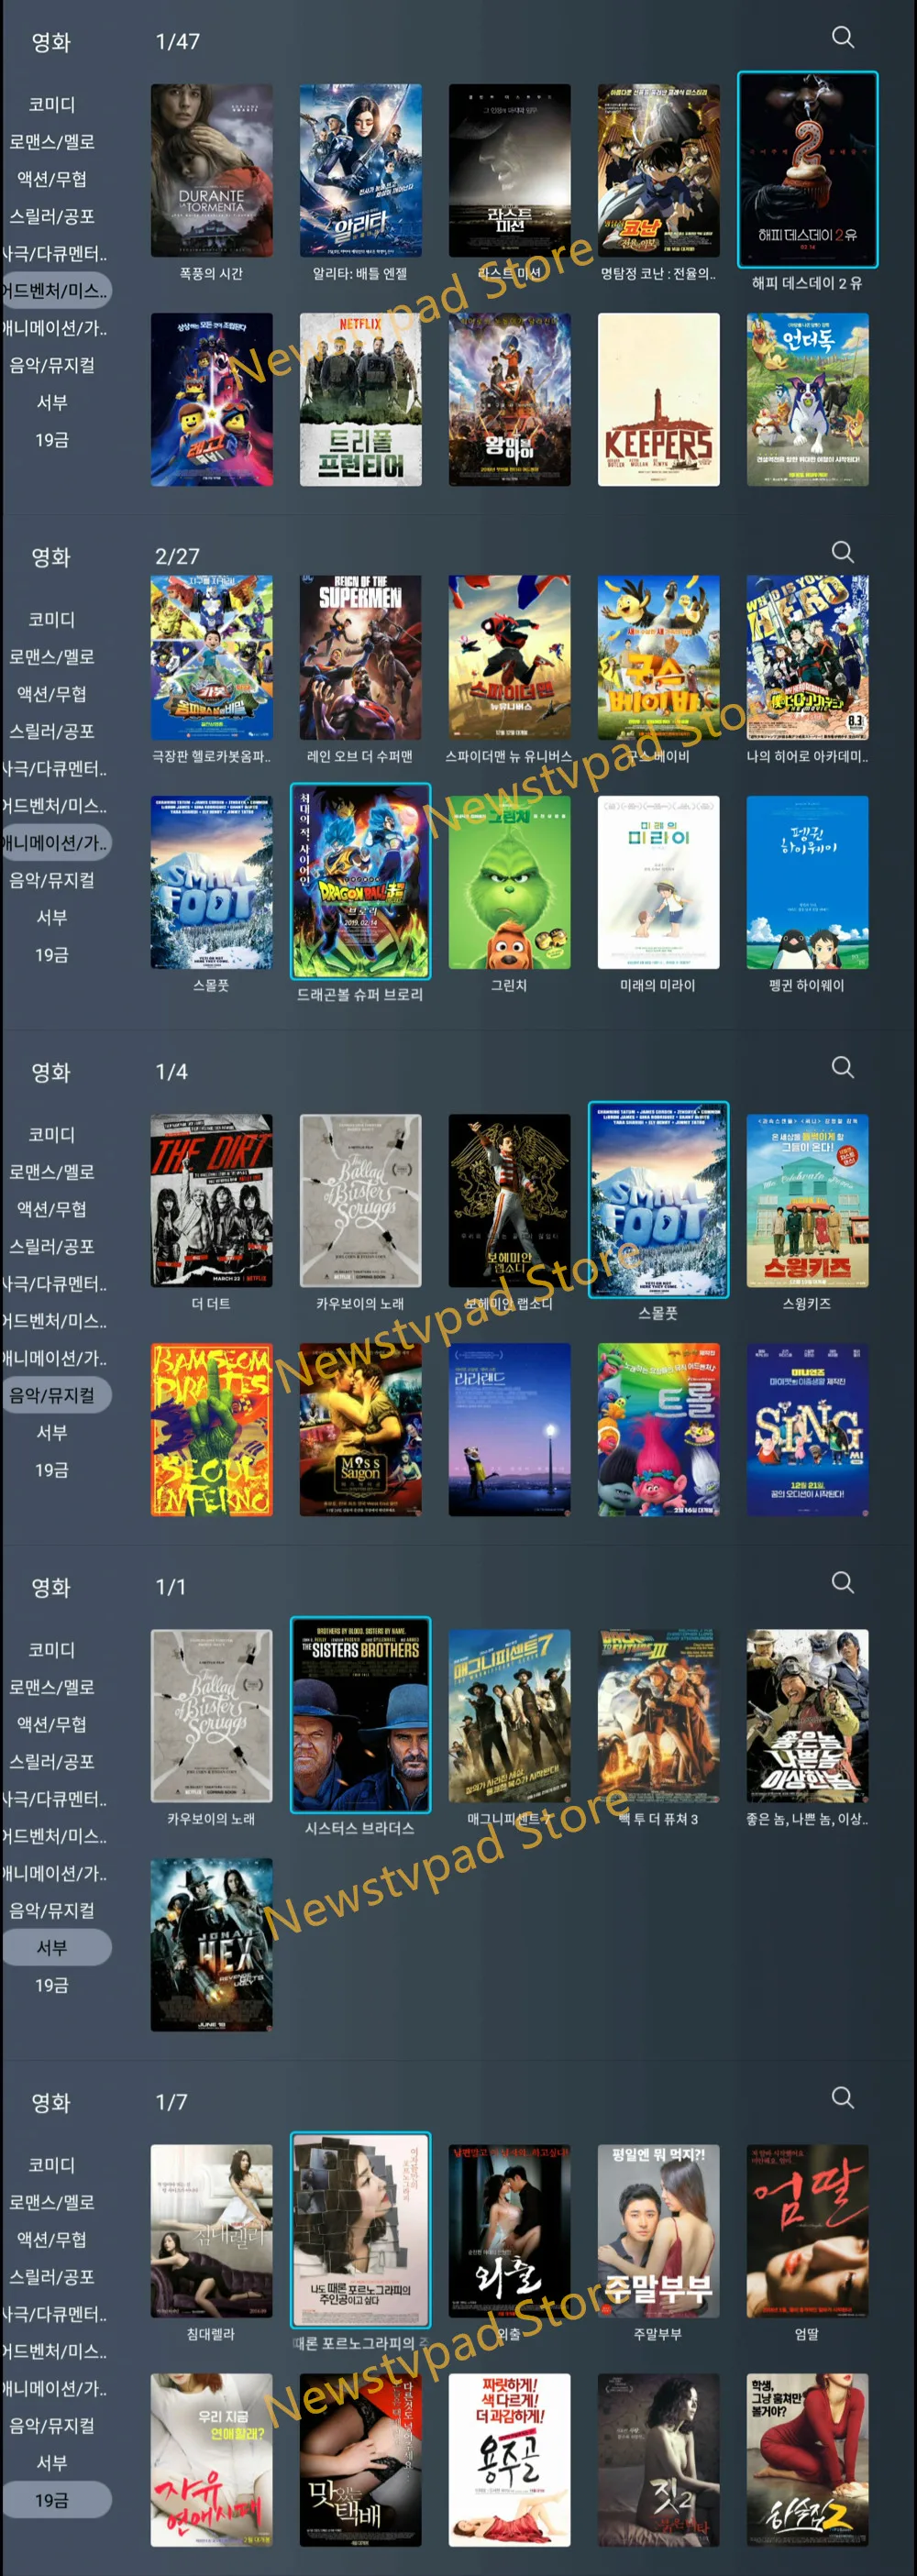 [Подлинный] Корейский tv pad4 evpad UBOX tv box корейские фильмы встроенный wifi Android tv box Бесплатные корейские прямые каналы потокового IP tv